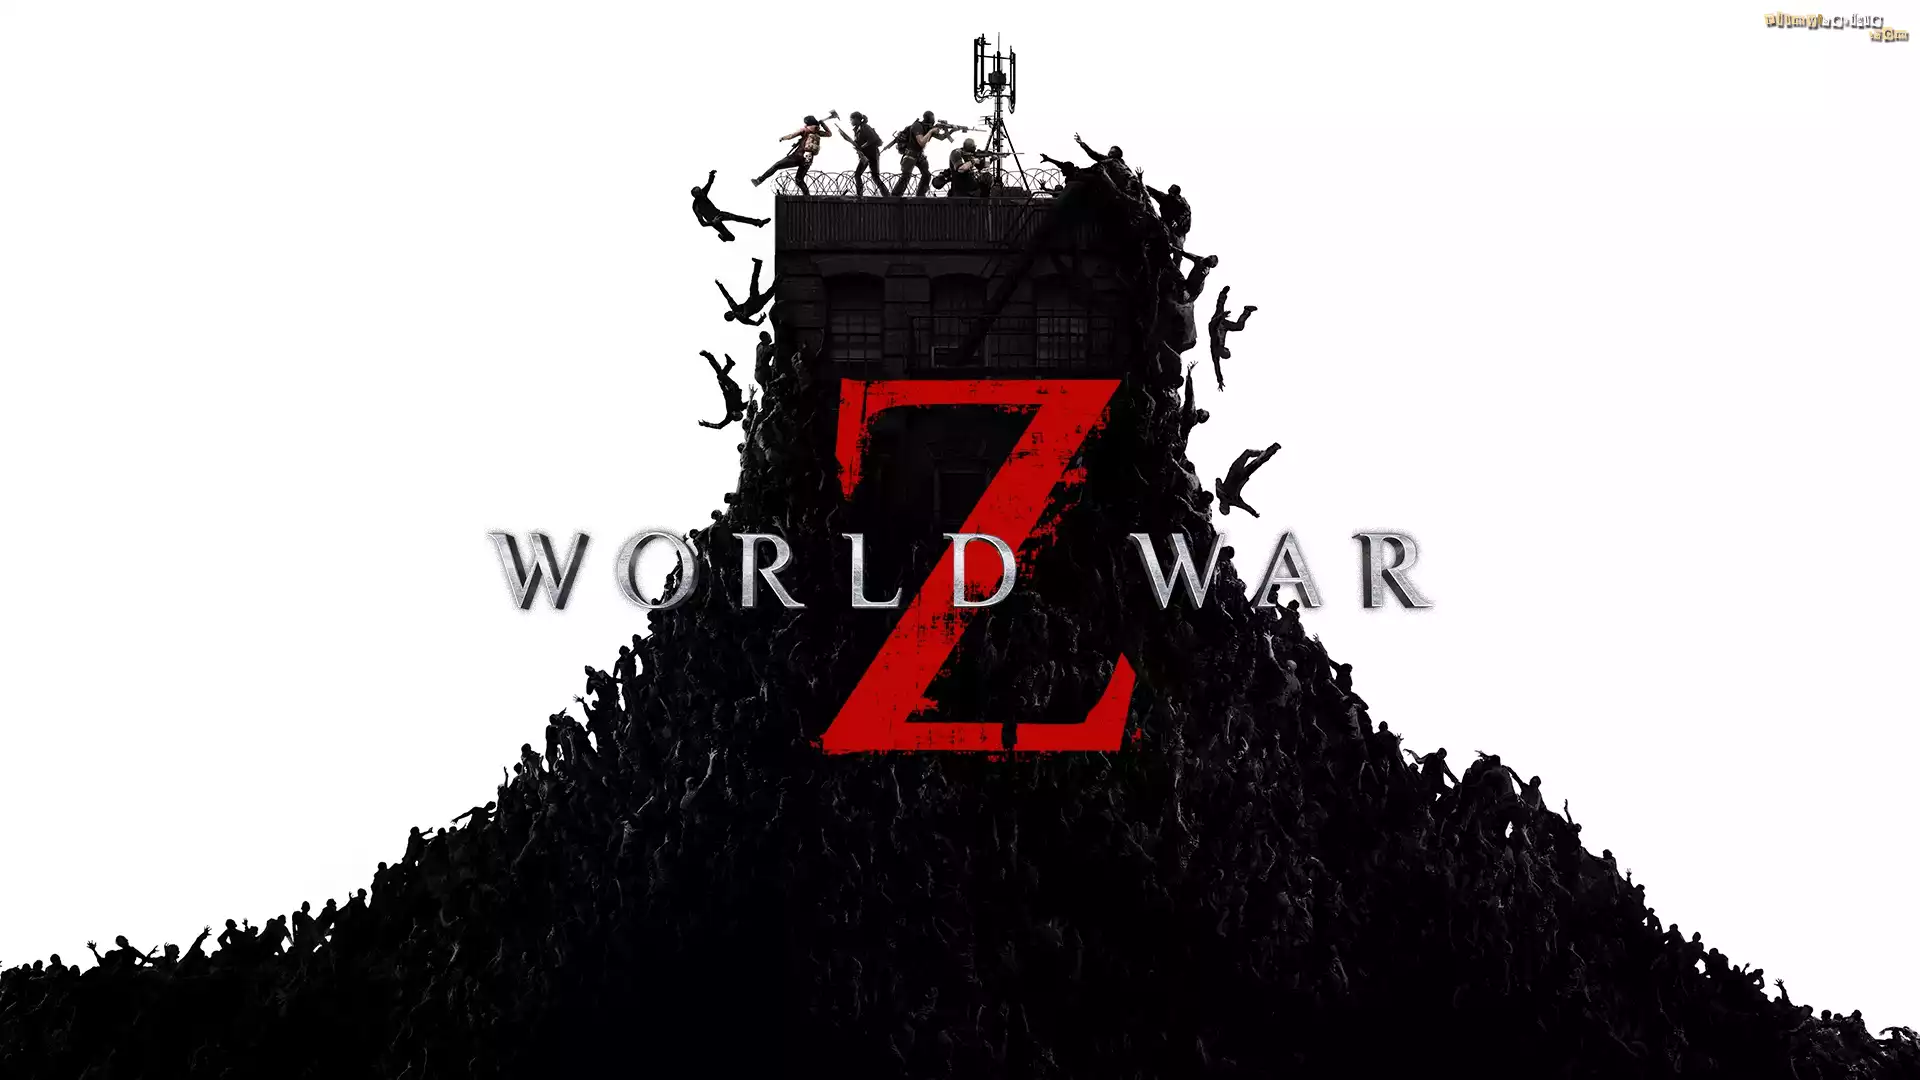 Film, World War Z